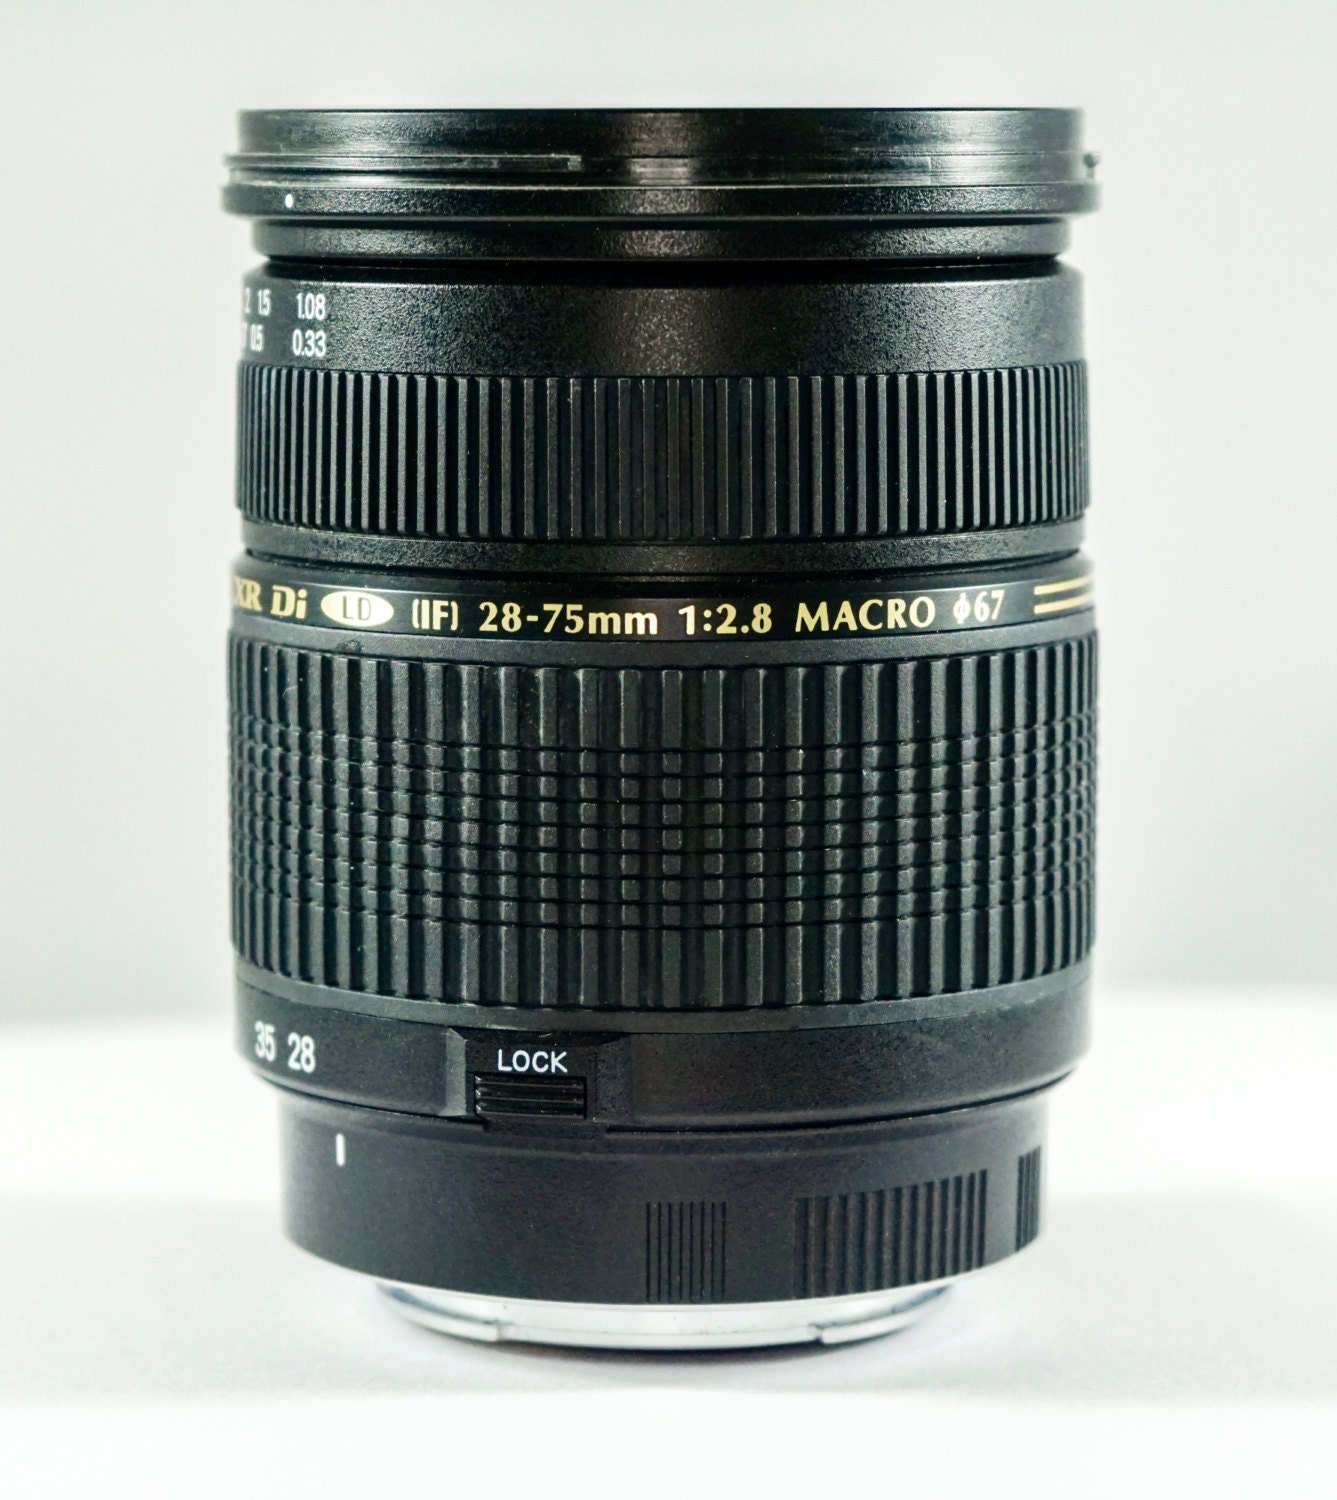 Tamron SP AF 28-75mm f/2.8 Macro Zoom Lens